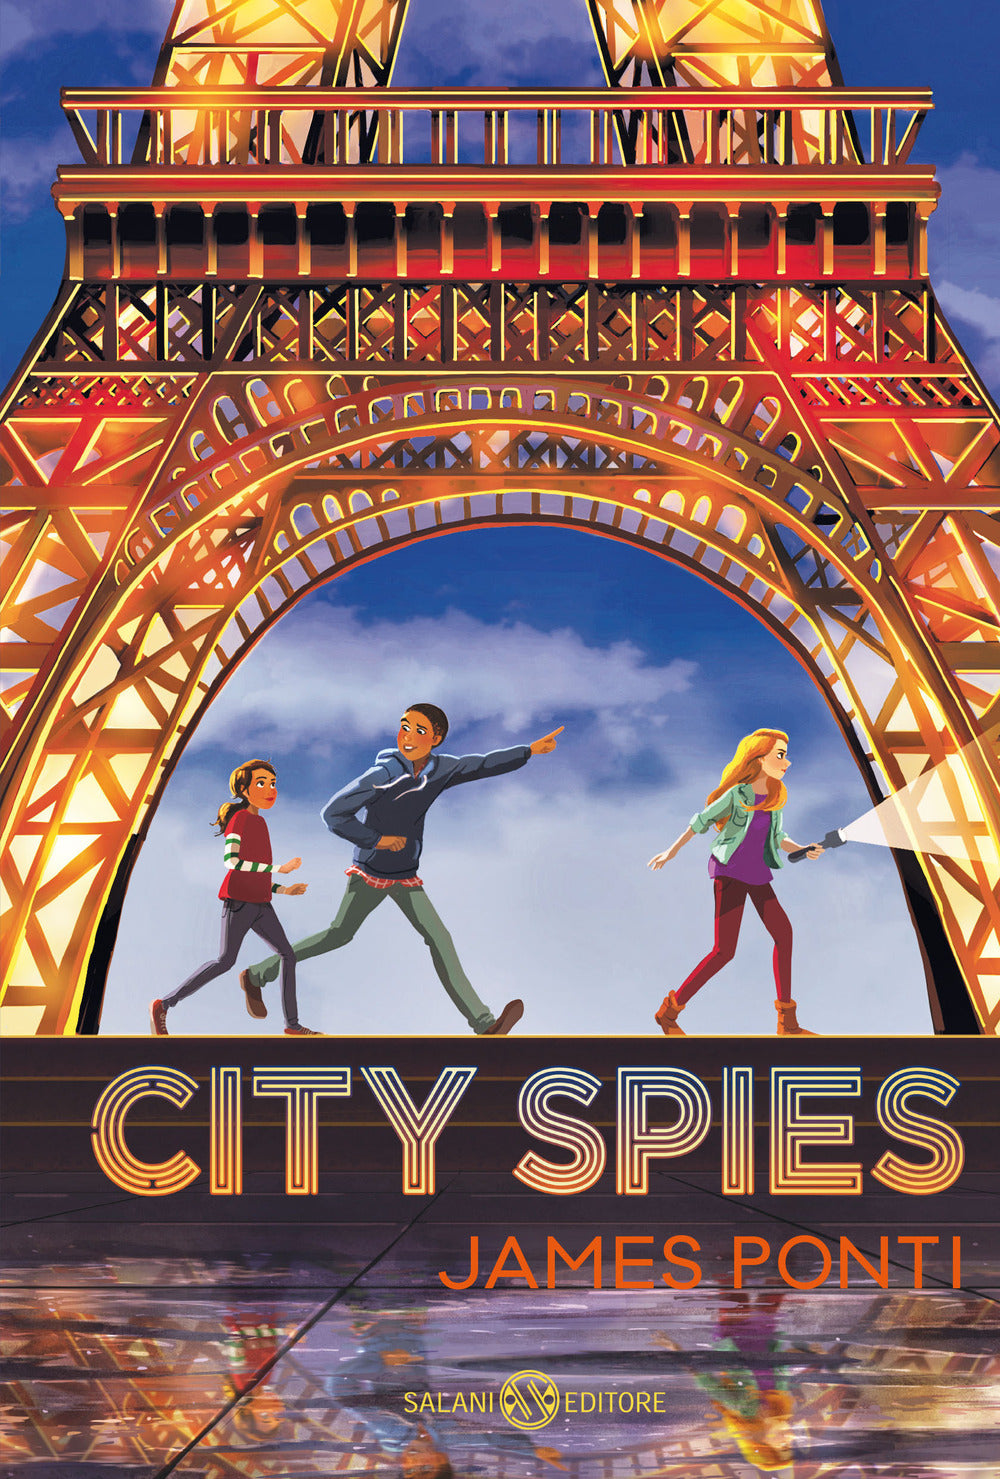 City spies.